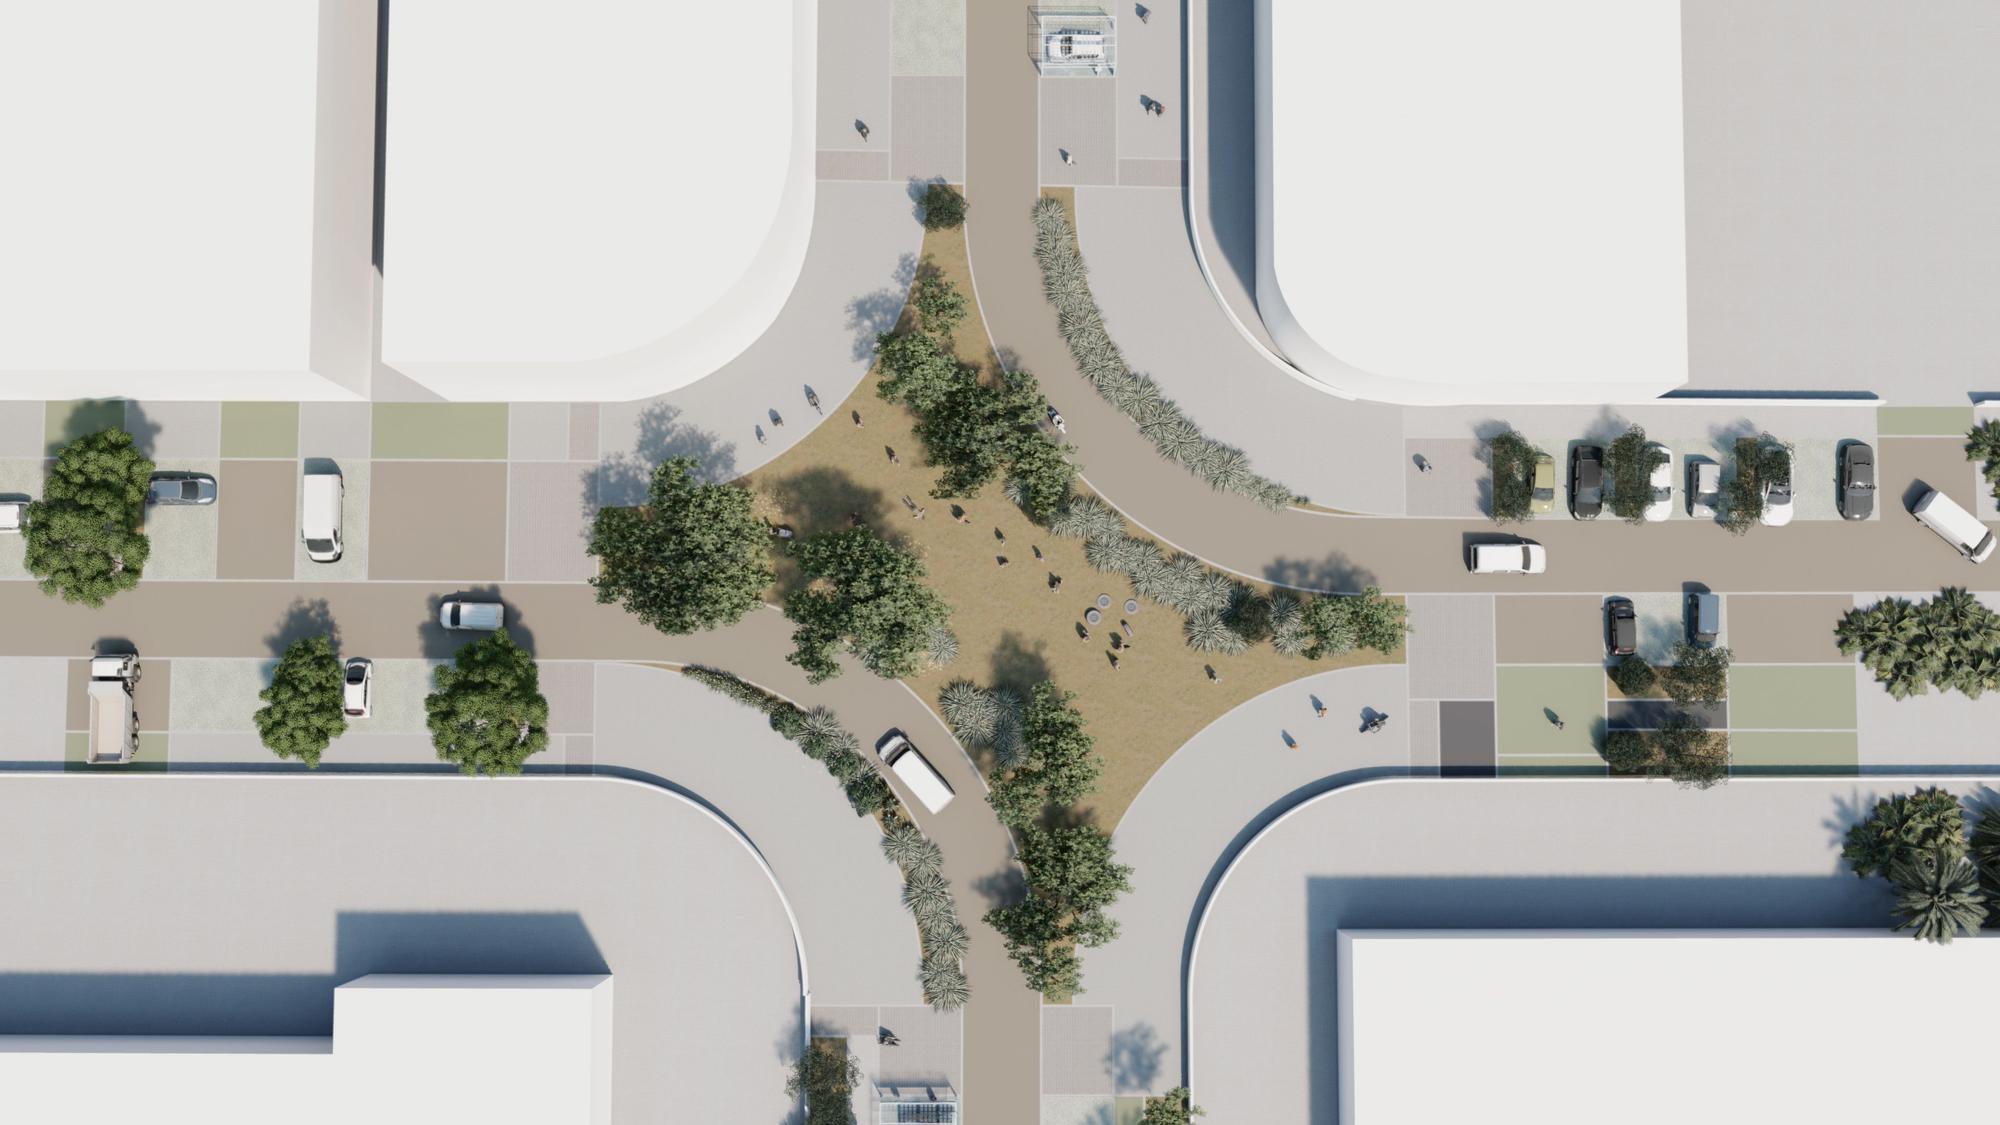 Ejemplo de cómo sería una &quot;no rotonda&quot; para apaciguar el tráfico y crear espacios peatonales en los cruces.